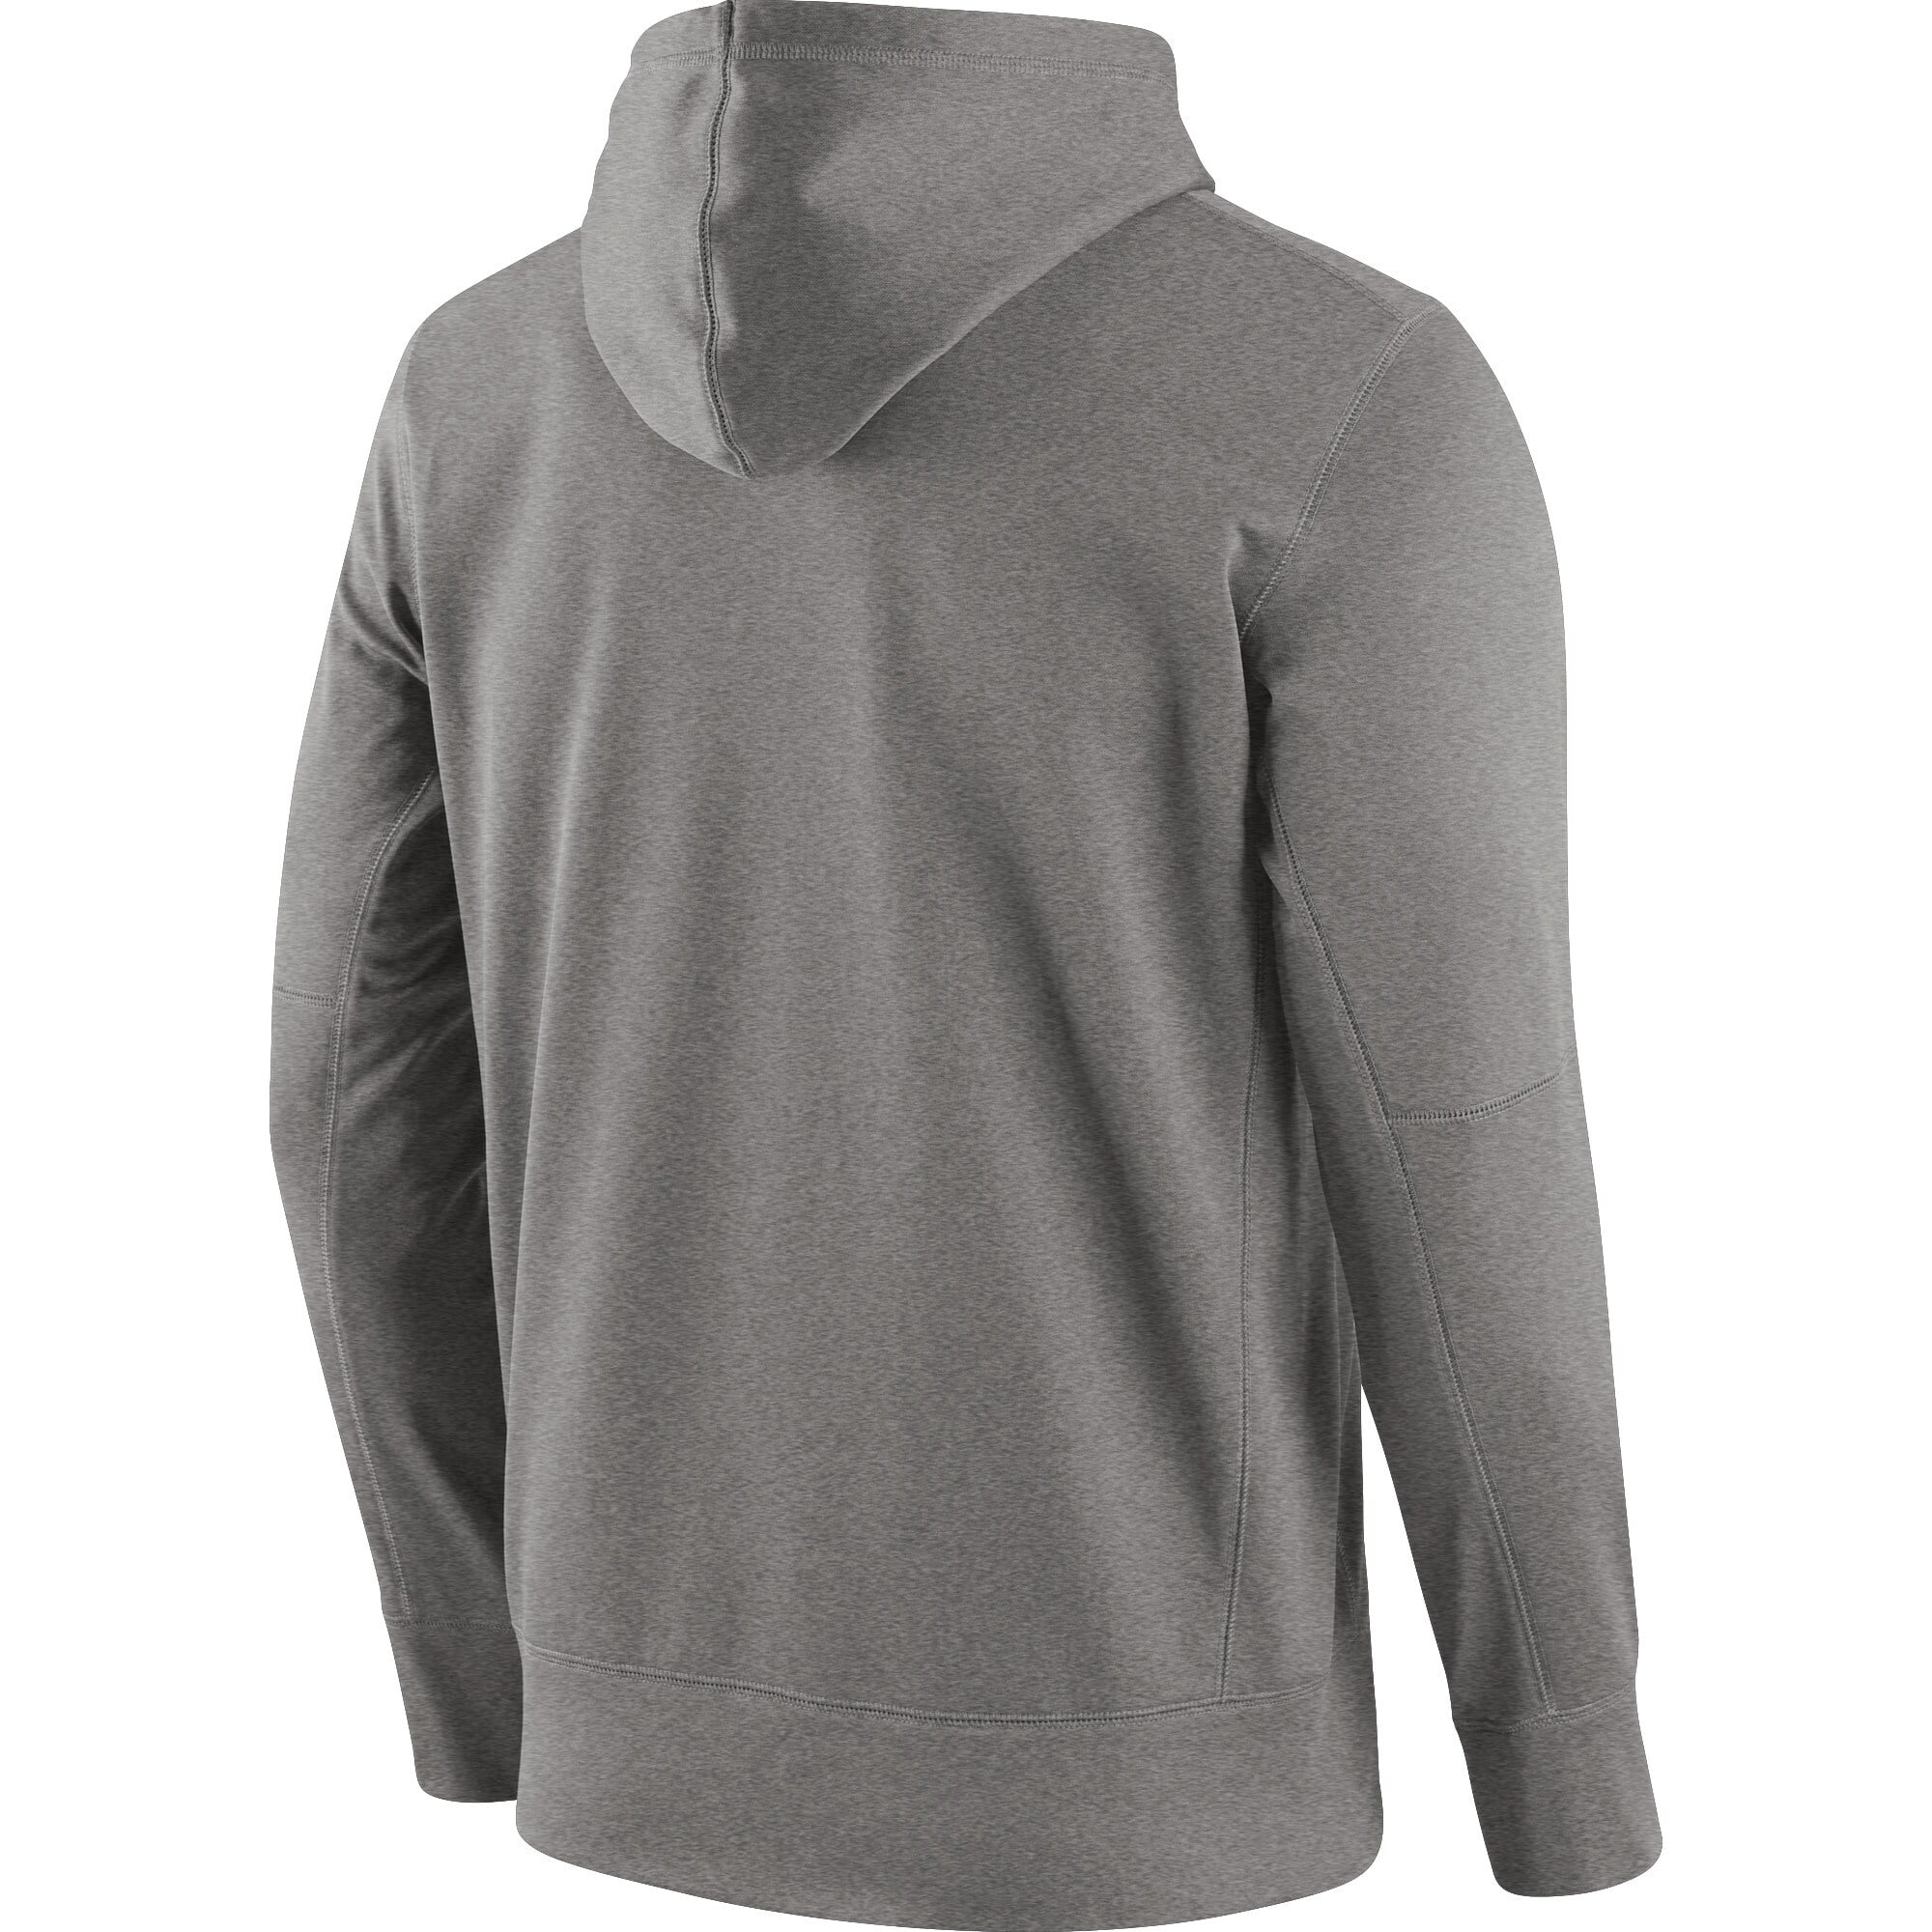 pittsburgh steelers nike team issue classic grey hoodie